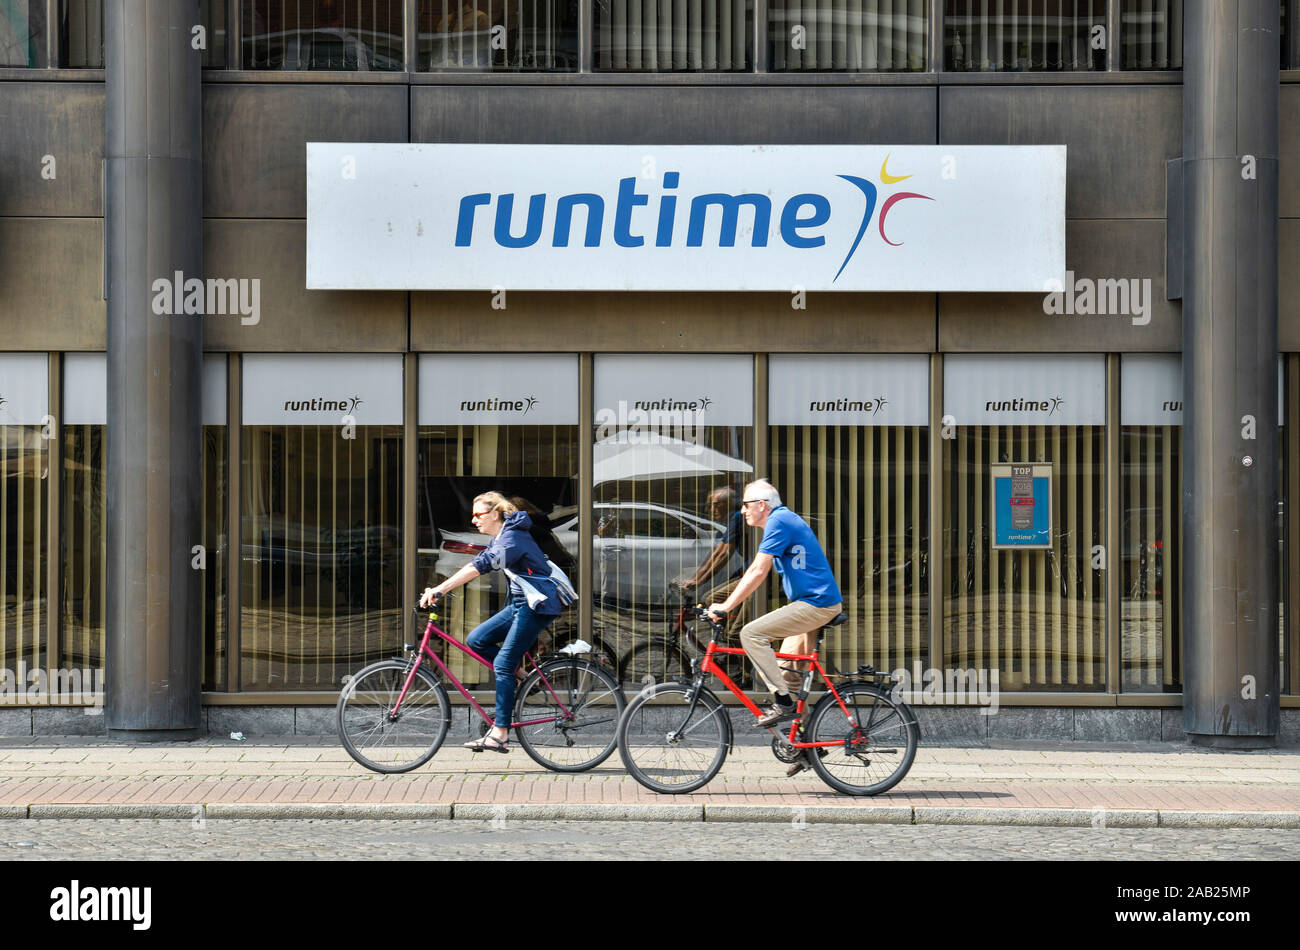 Personaldienstleister Runtime, Balgebrückstraße, Brema, Deutschland Foto Stock